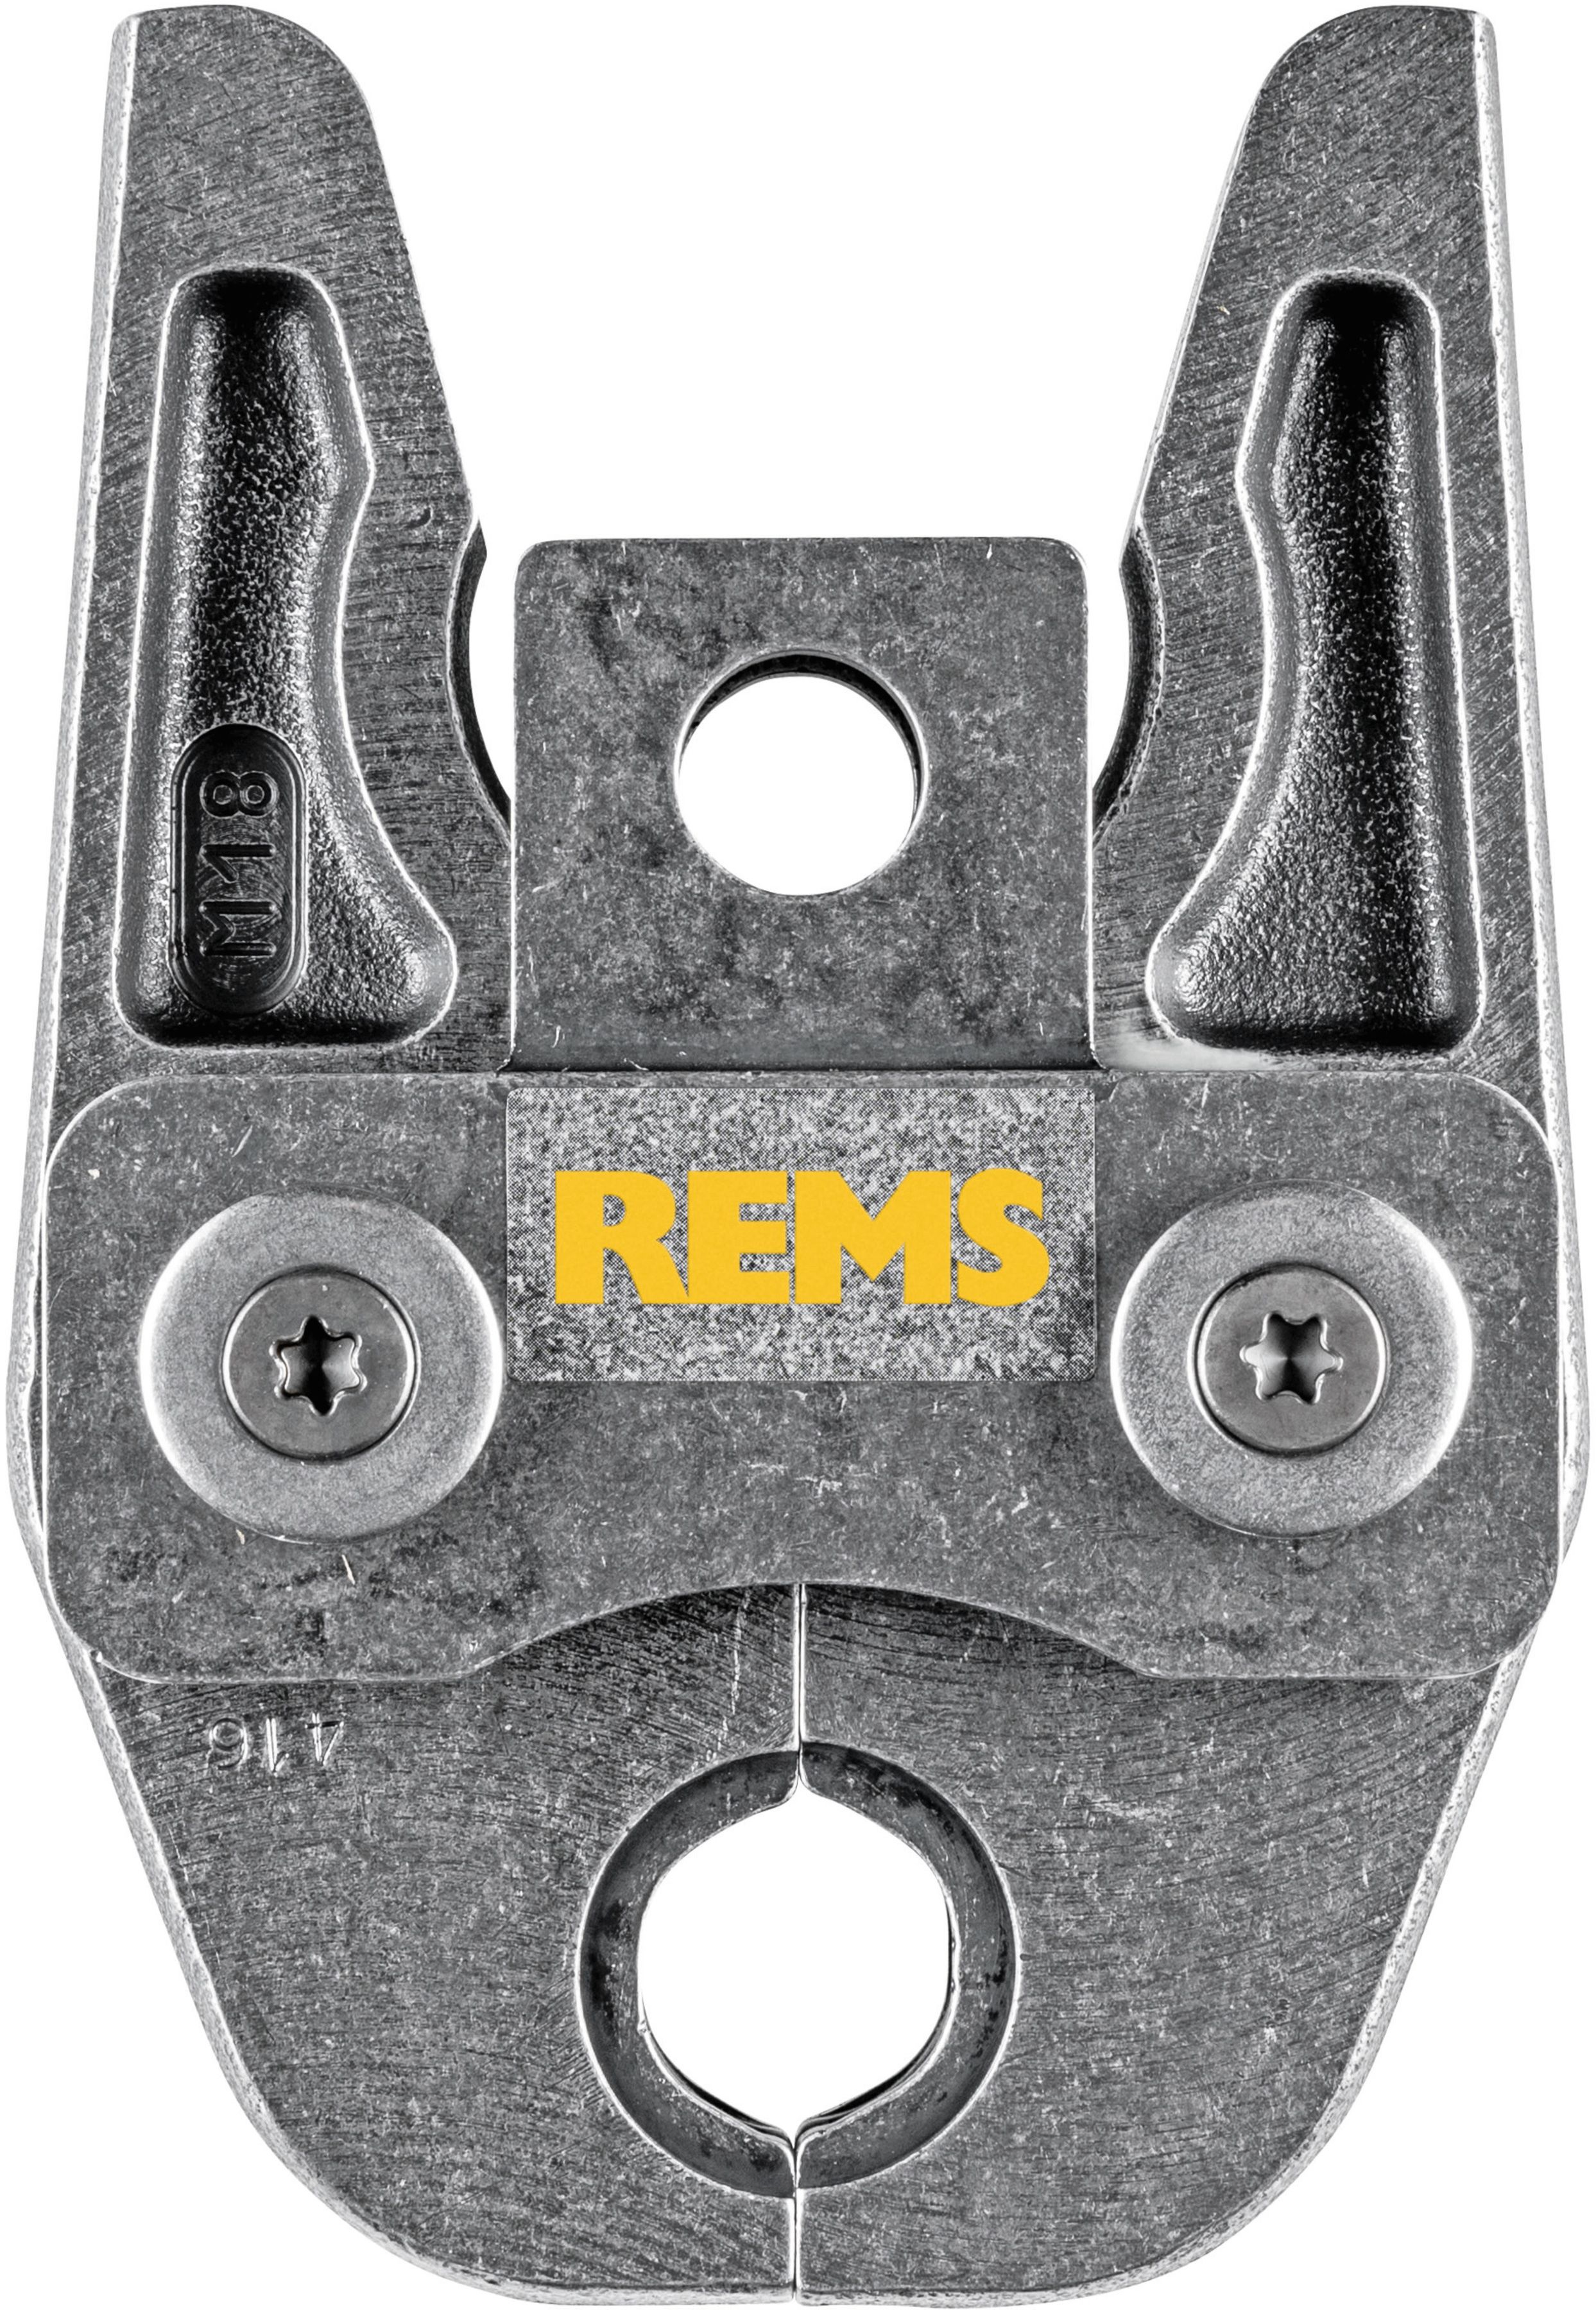 REMS Presszange 570160, M42 - Sanitärwerkzeuge